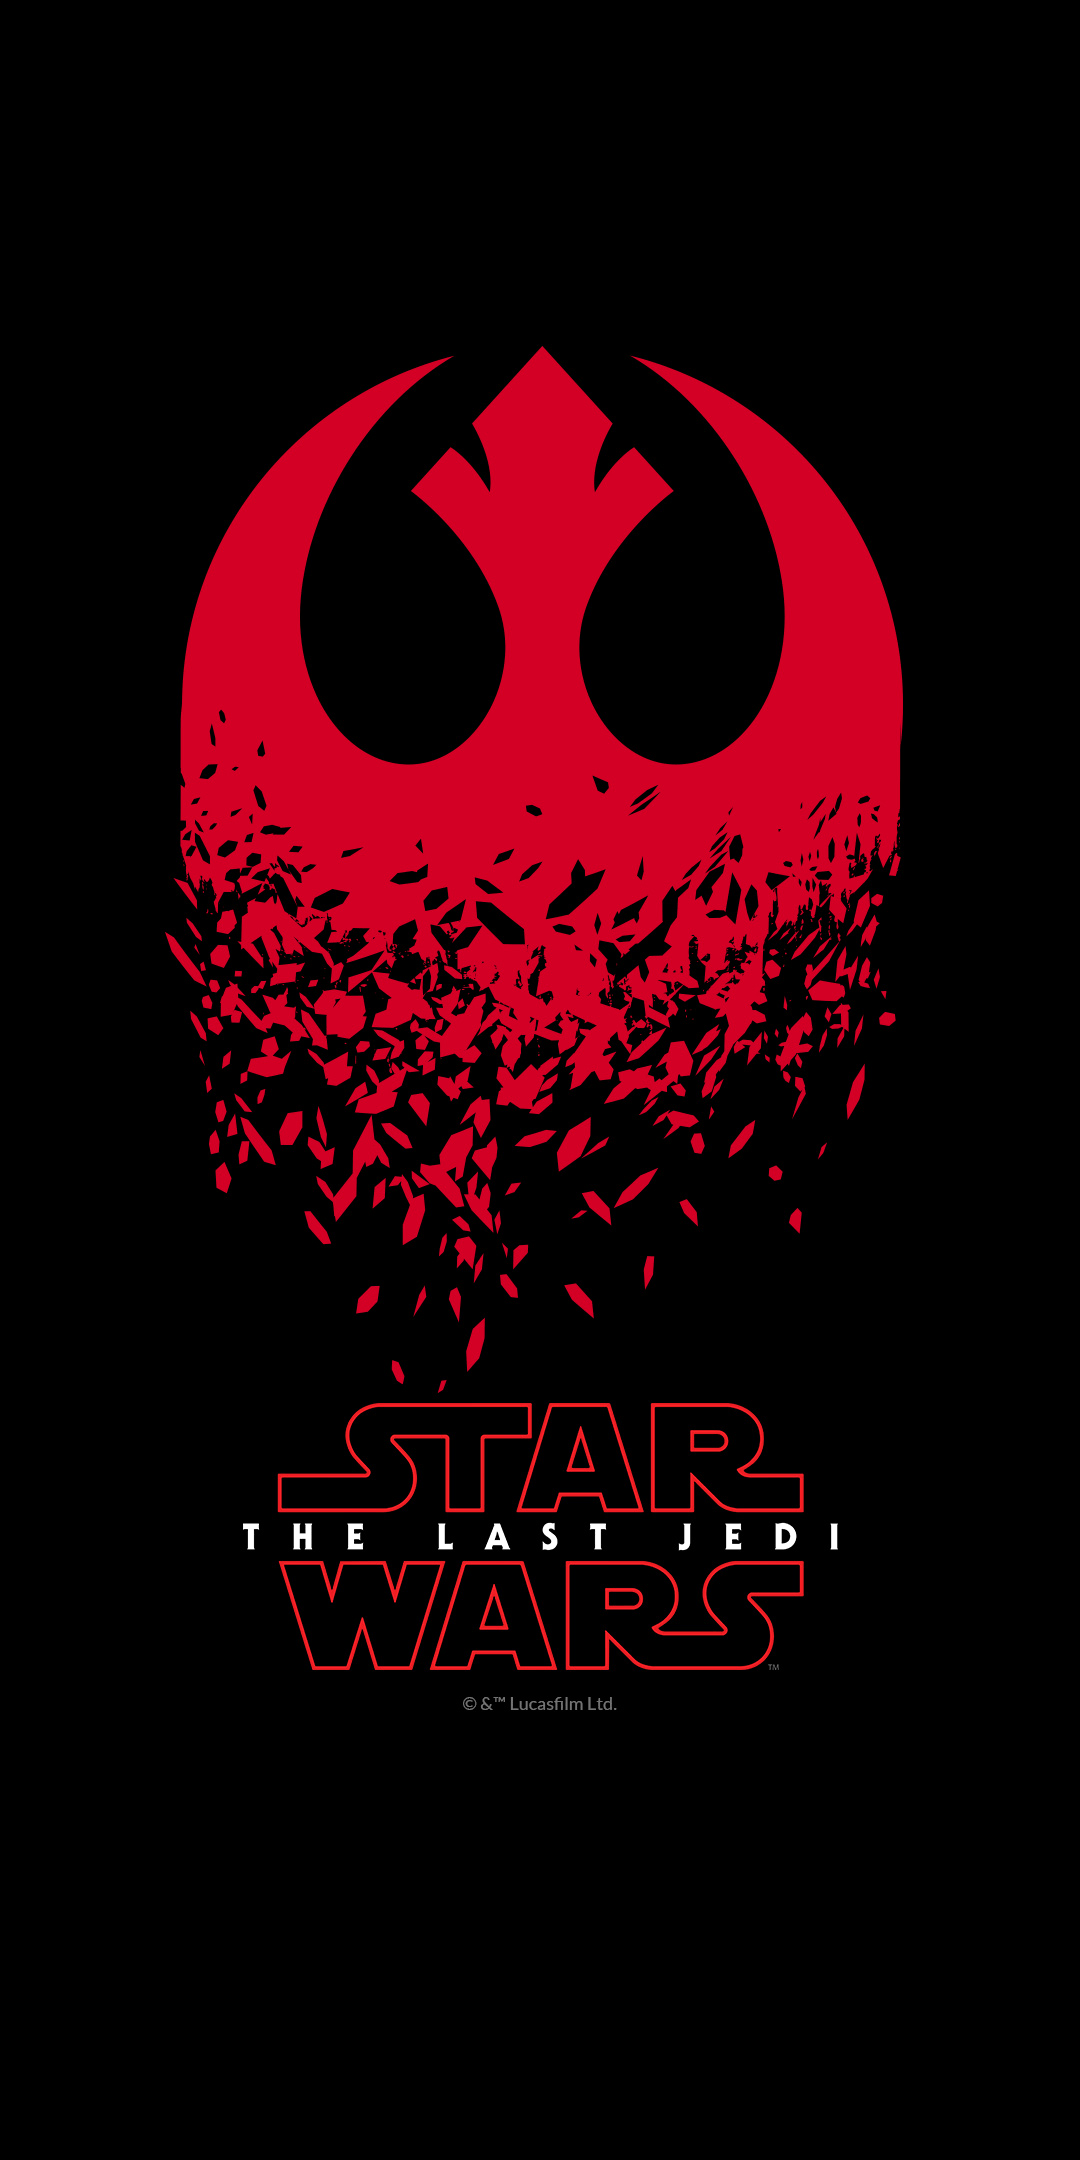 The Last Jedi Star Wars Wallpaper Free The Last Jedi Star